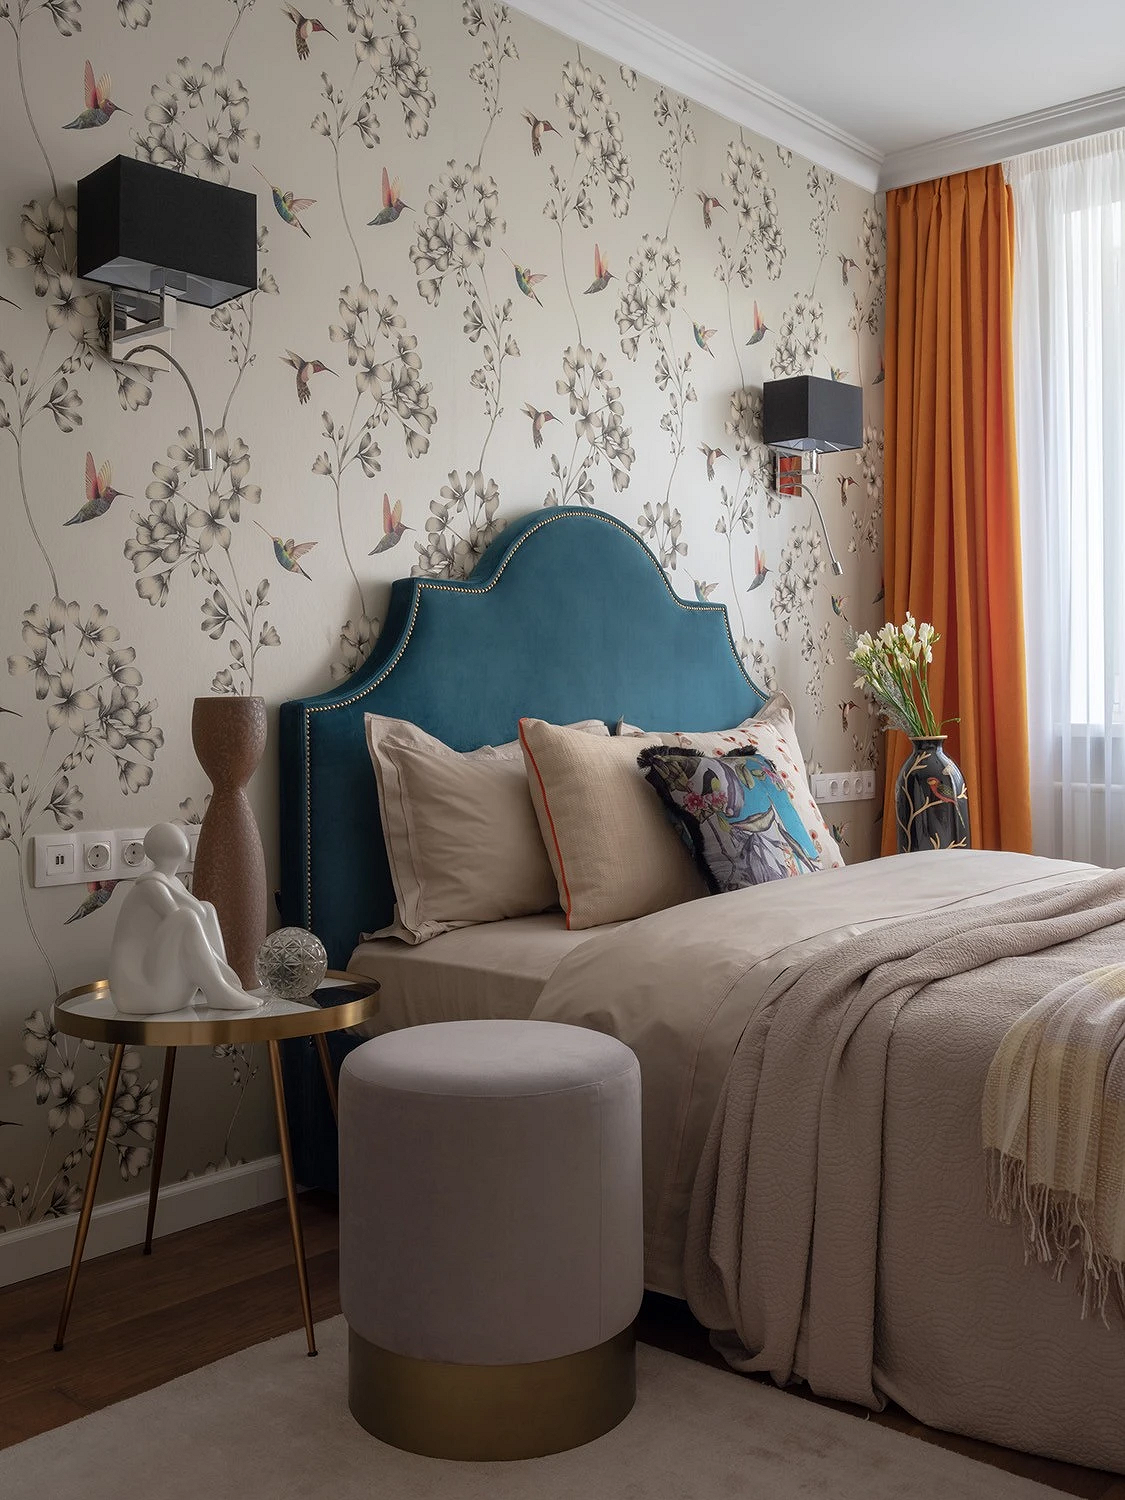 Как дизайнеры оформляют свои спальни? 6 красивых комнат из проектов профи21